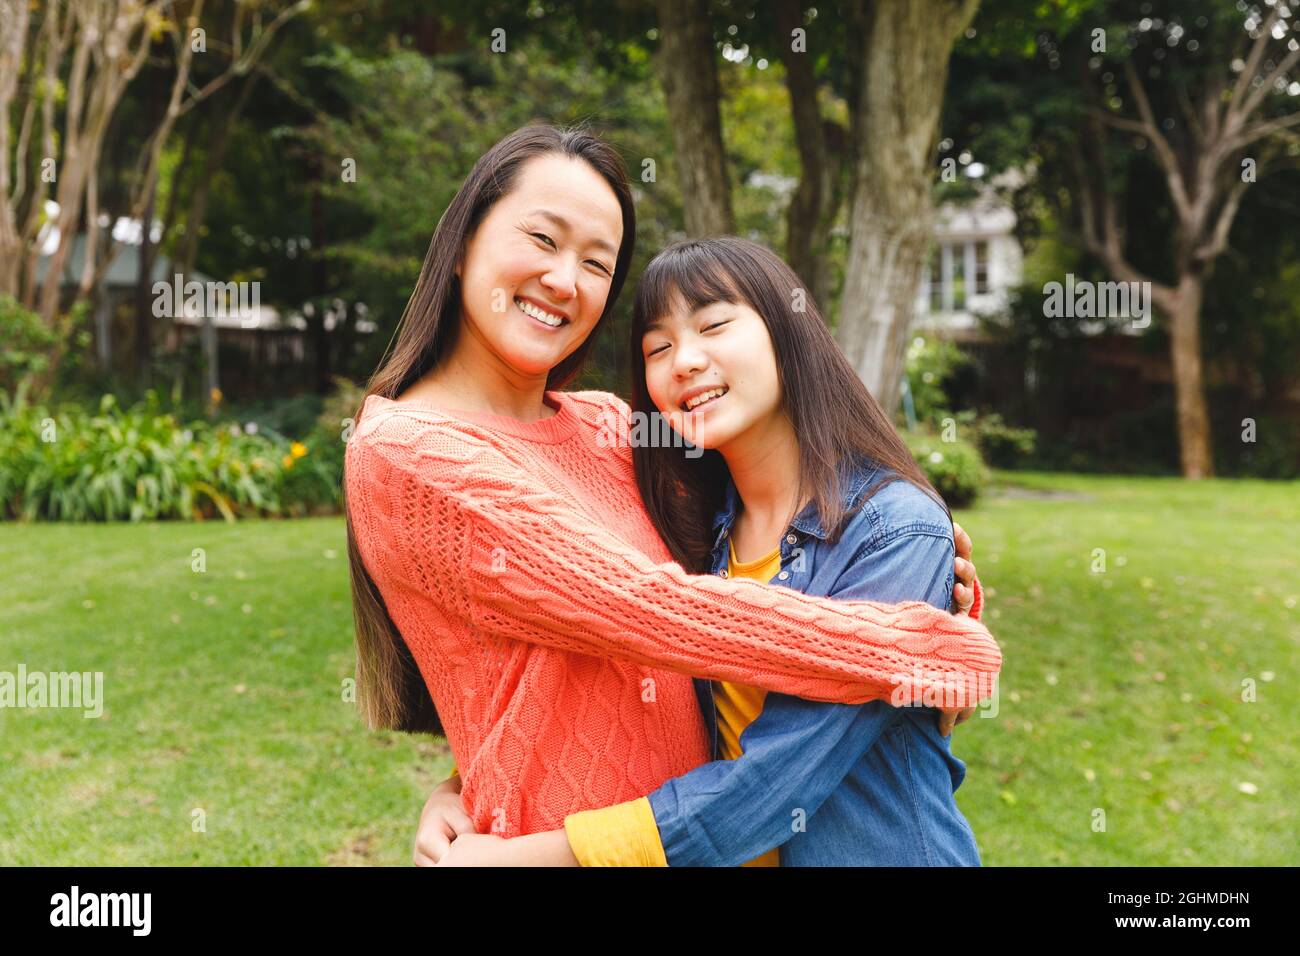 Porträt einer glücklichen asiatischen Mutter, die ihre Tochter umarmt und im Garten lächelt Stockfoto